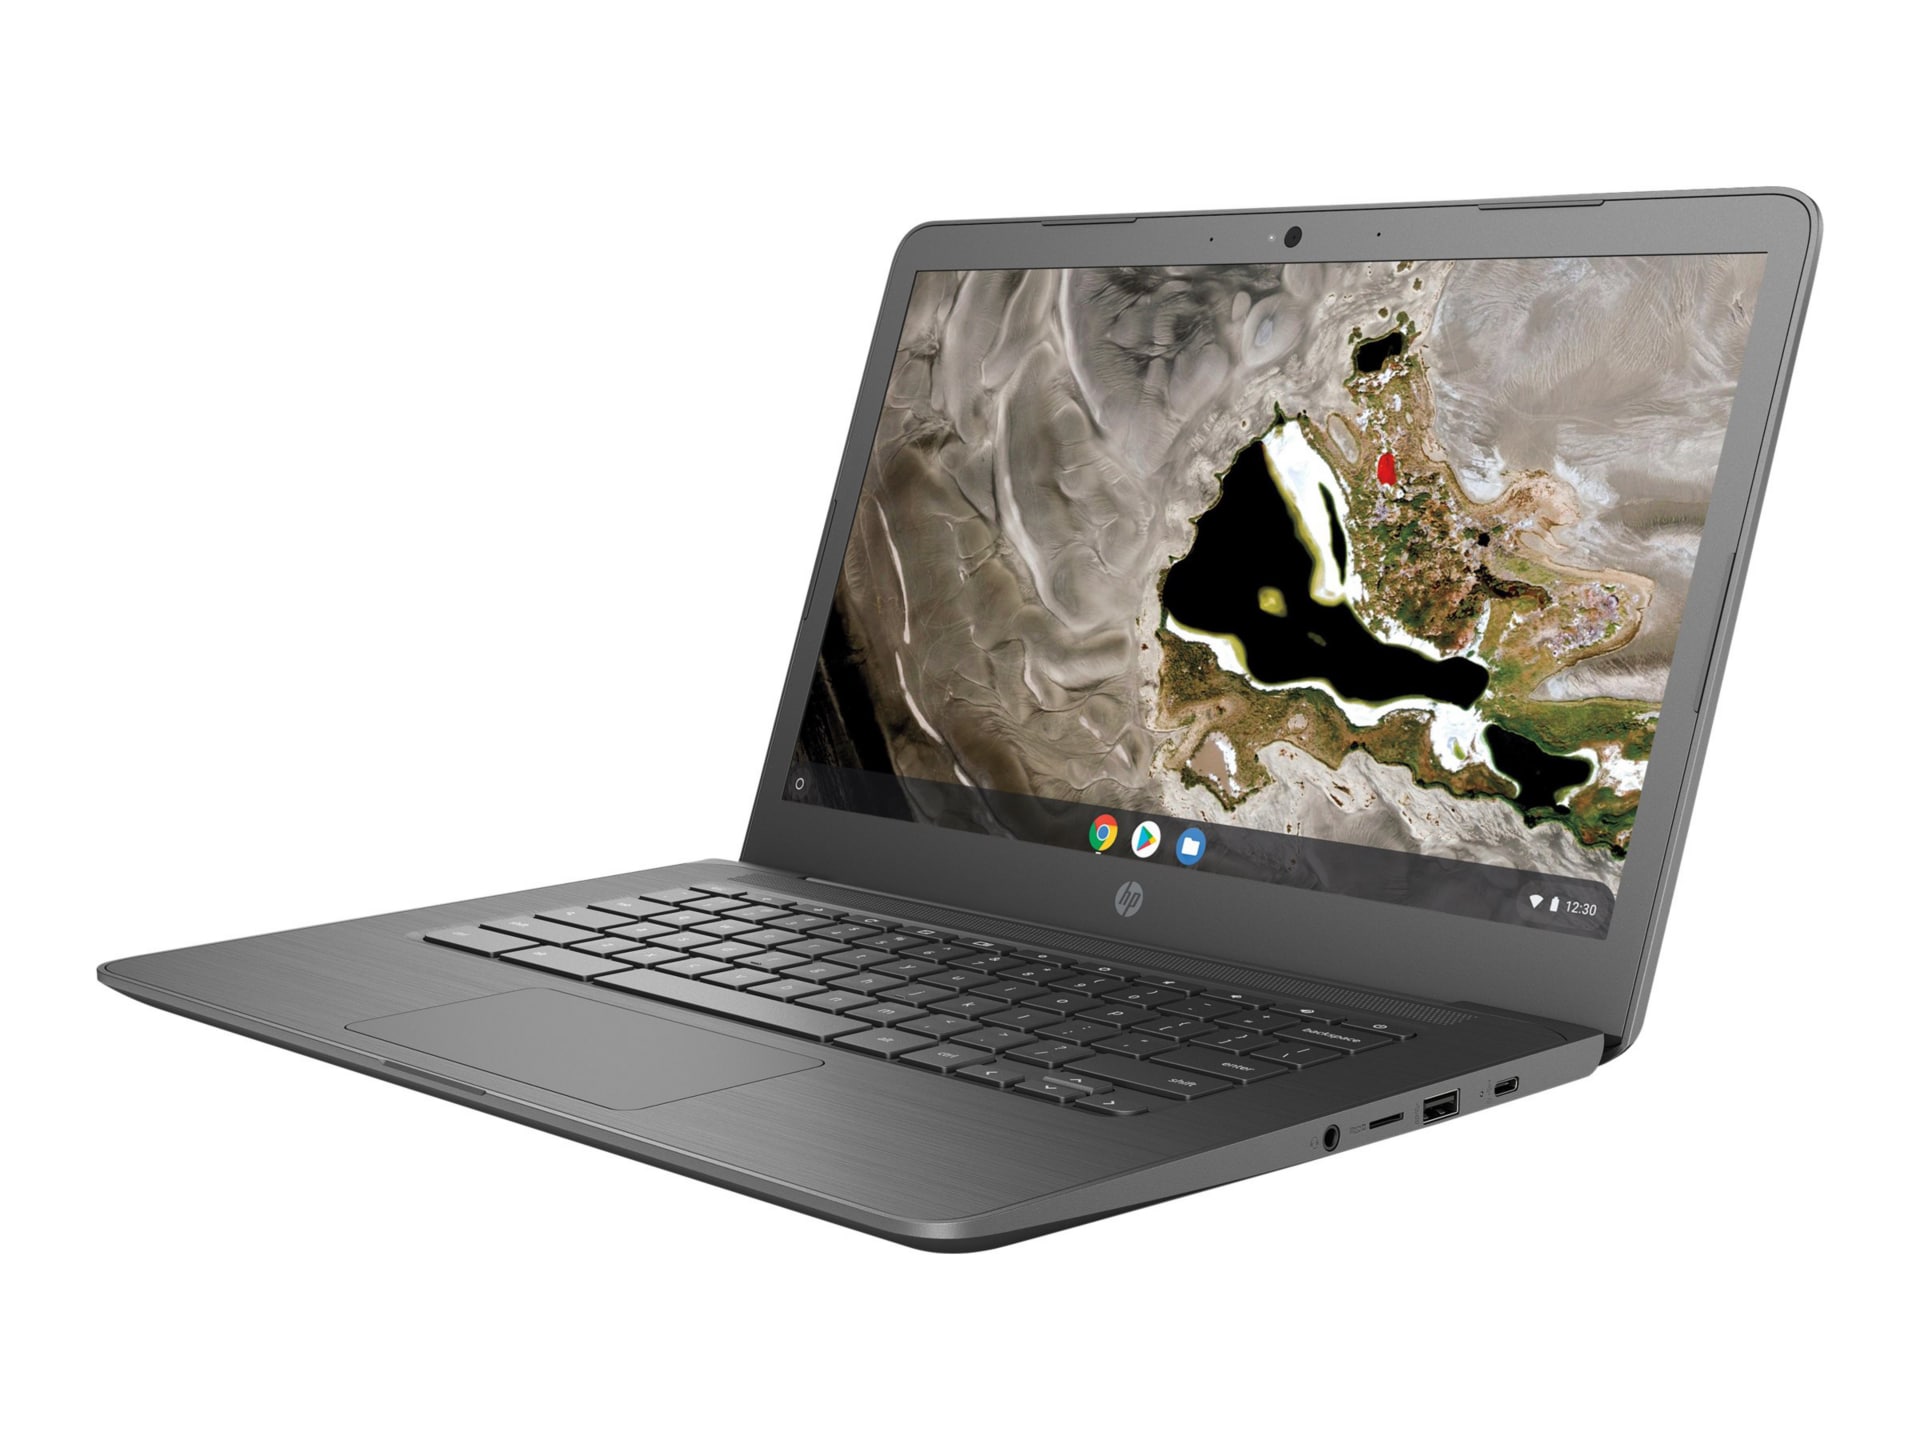 HP SB Chromebook 14A G5 AMD A6 9220C 4GB RAM 32GB Chrome